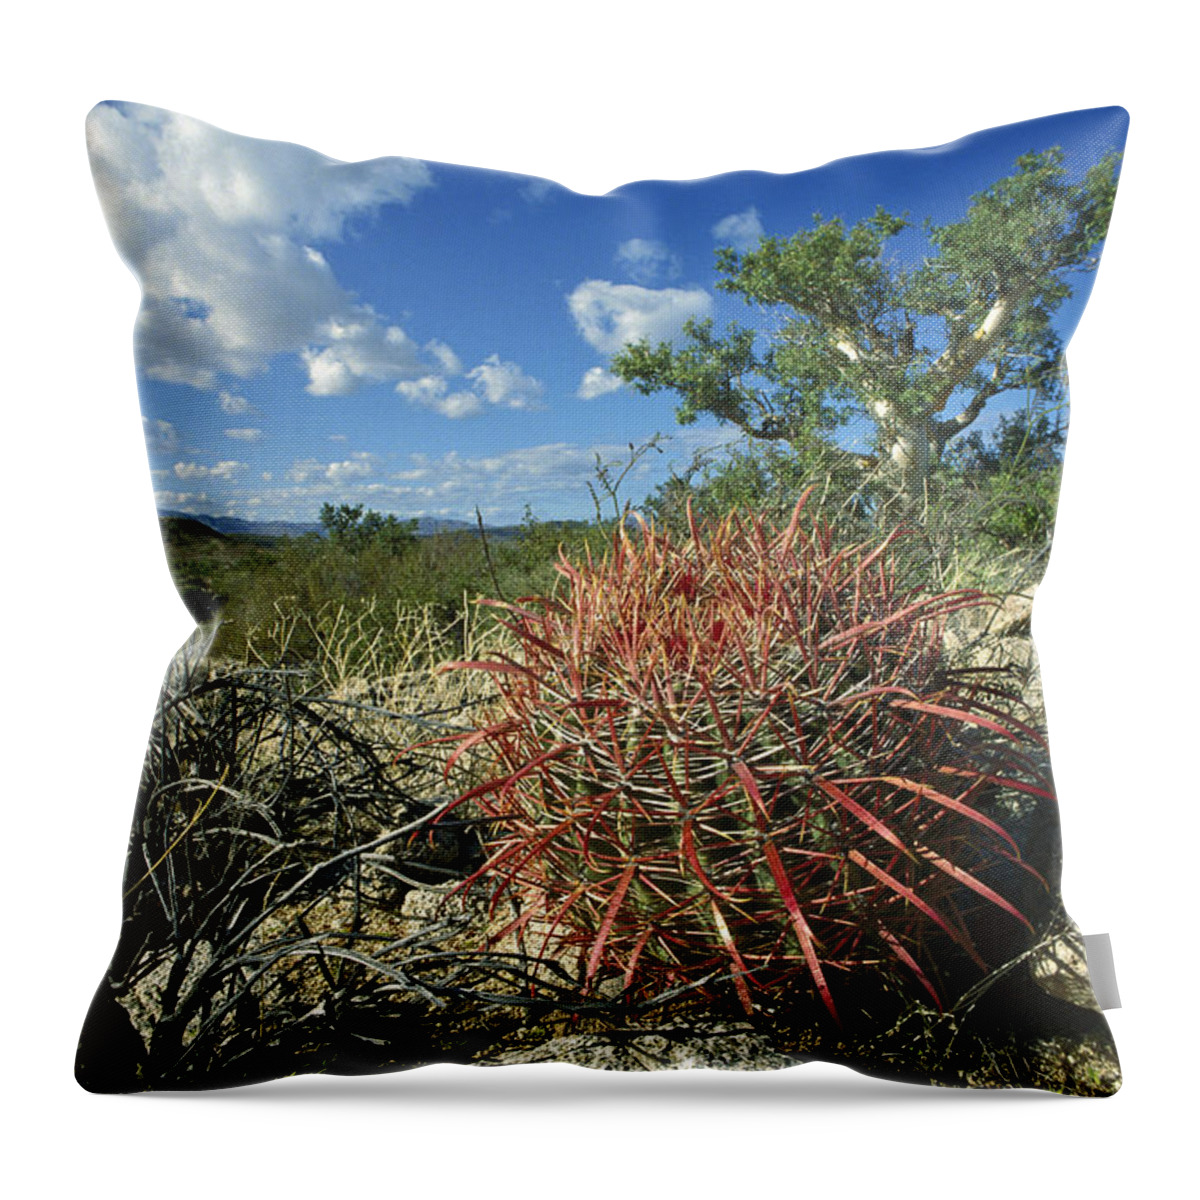 Feb0514 Throw Pillow featuring the photograph Barrel Cactus Baja California Mexico by Tui De Roy